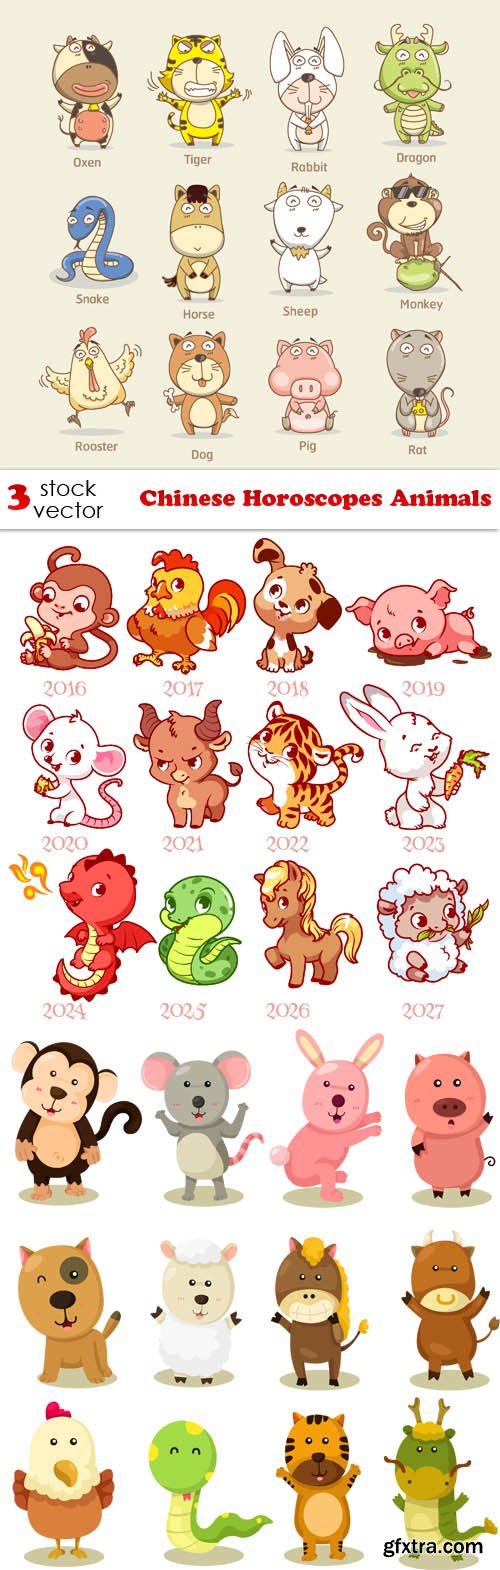 Vectors - Chinese Horoscopes Animals